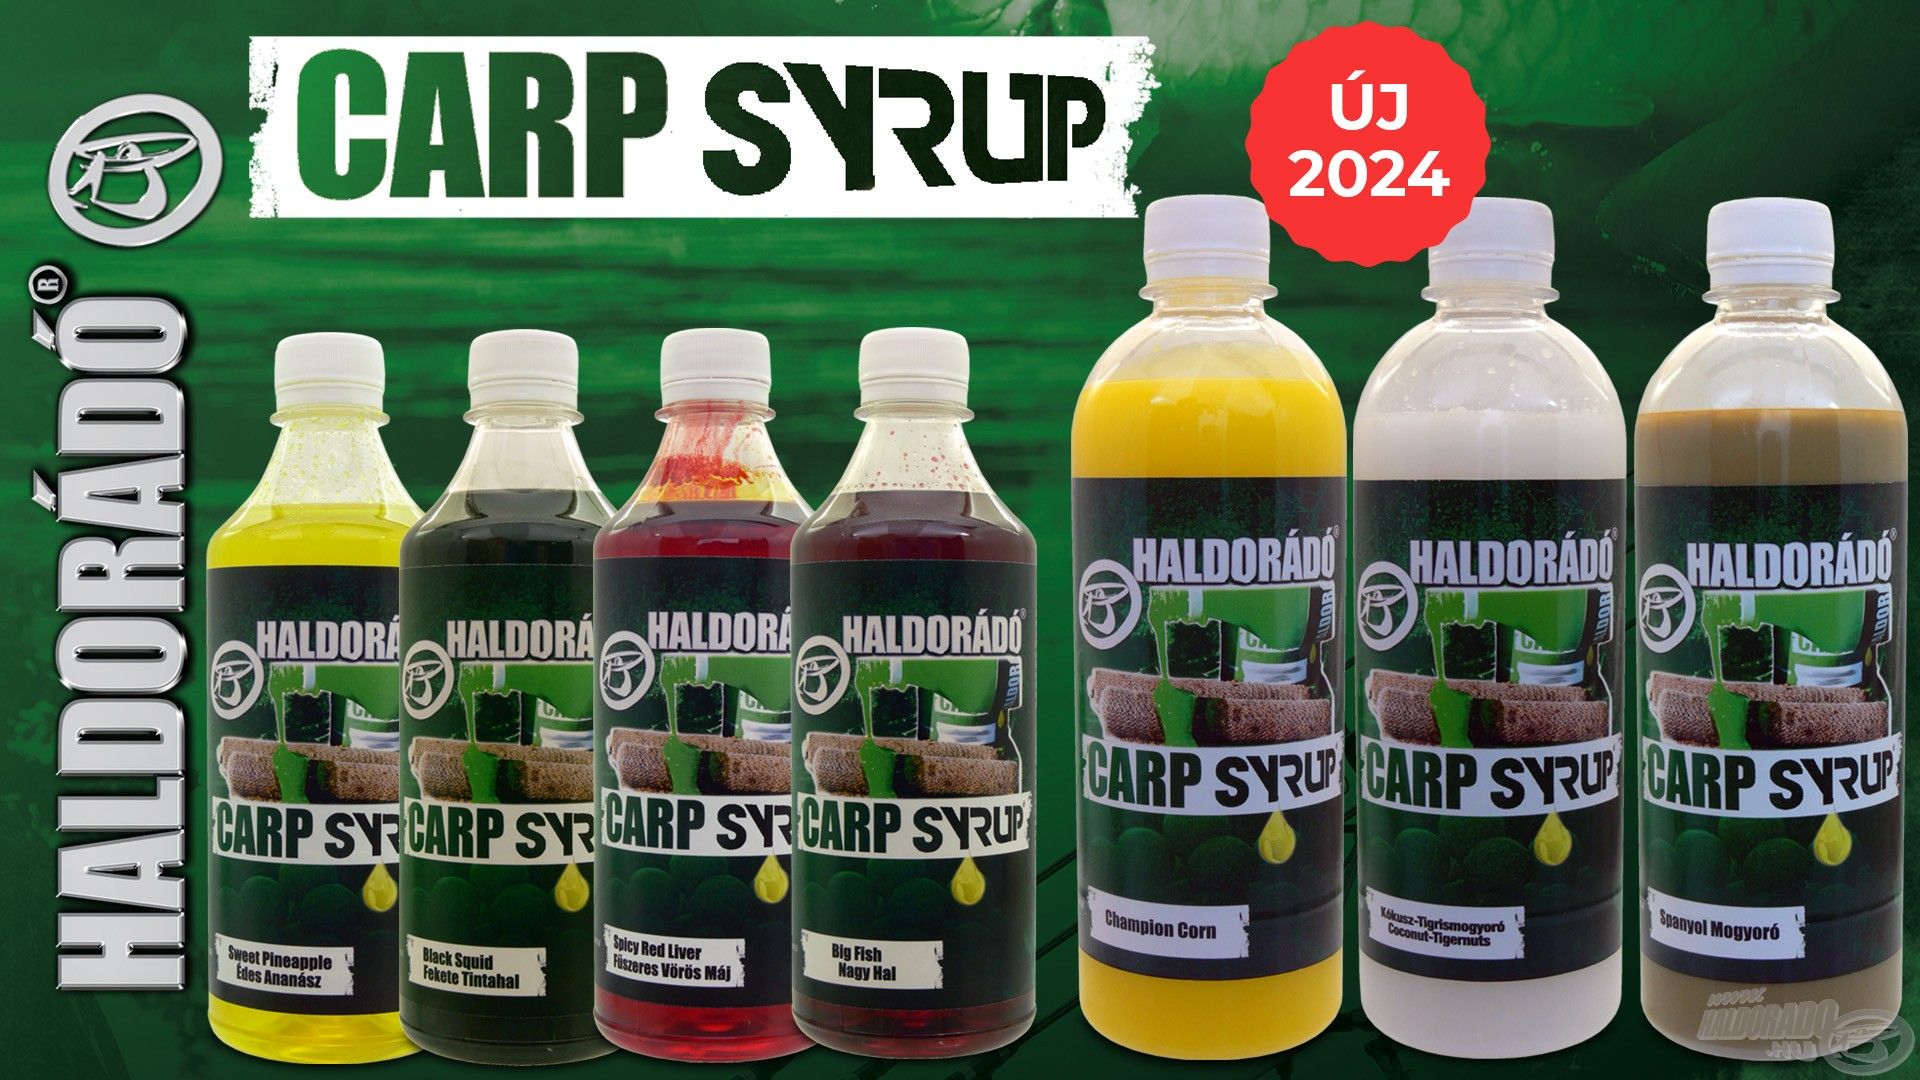 A Carp Syrup család hét tagból áll, az ízesítések megegyeznek a MAX MOTION Boilie termékeink ízesítésével